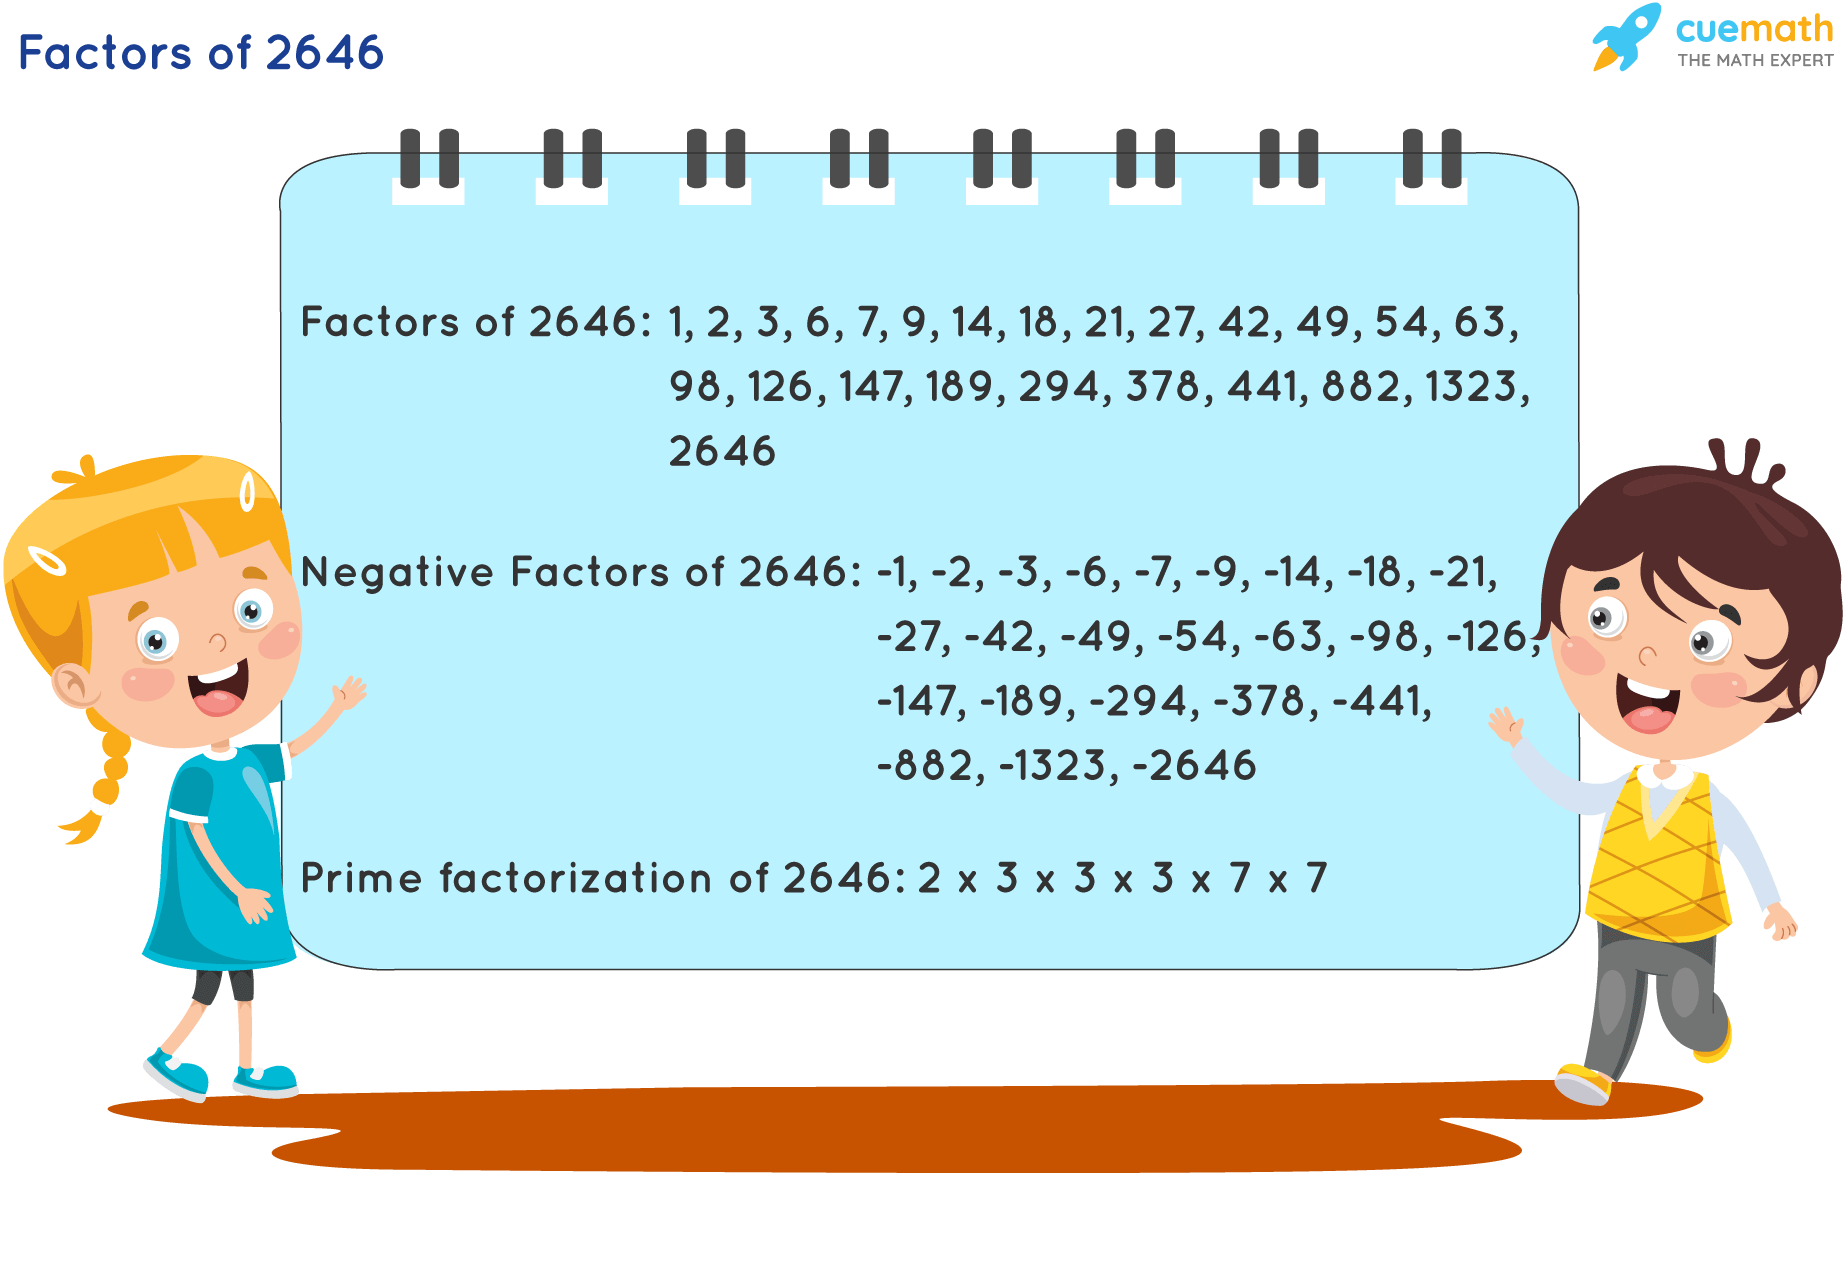 Factors of 2646